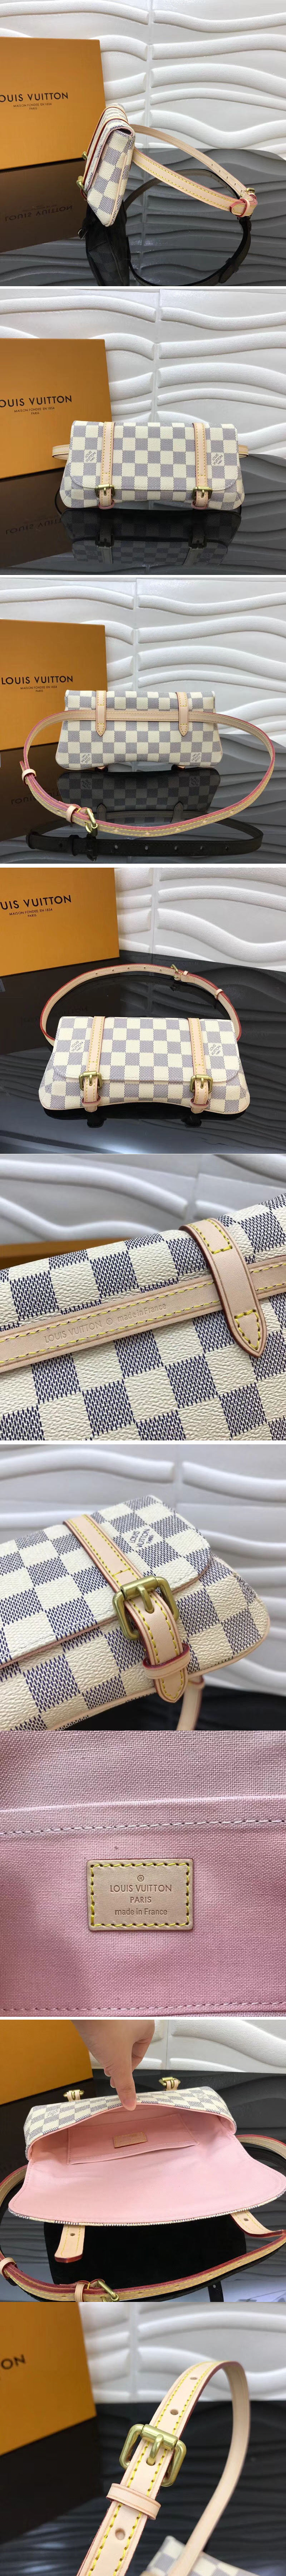 Replica Louis Vuitton M51159 LV Damier Azur Canvas Pochette Marelle Bum Bag